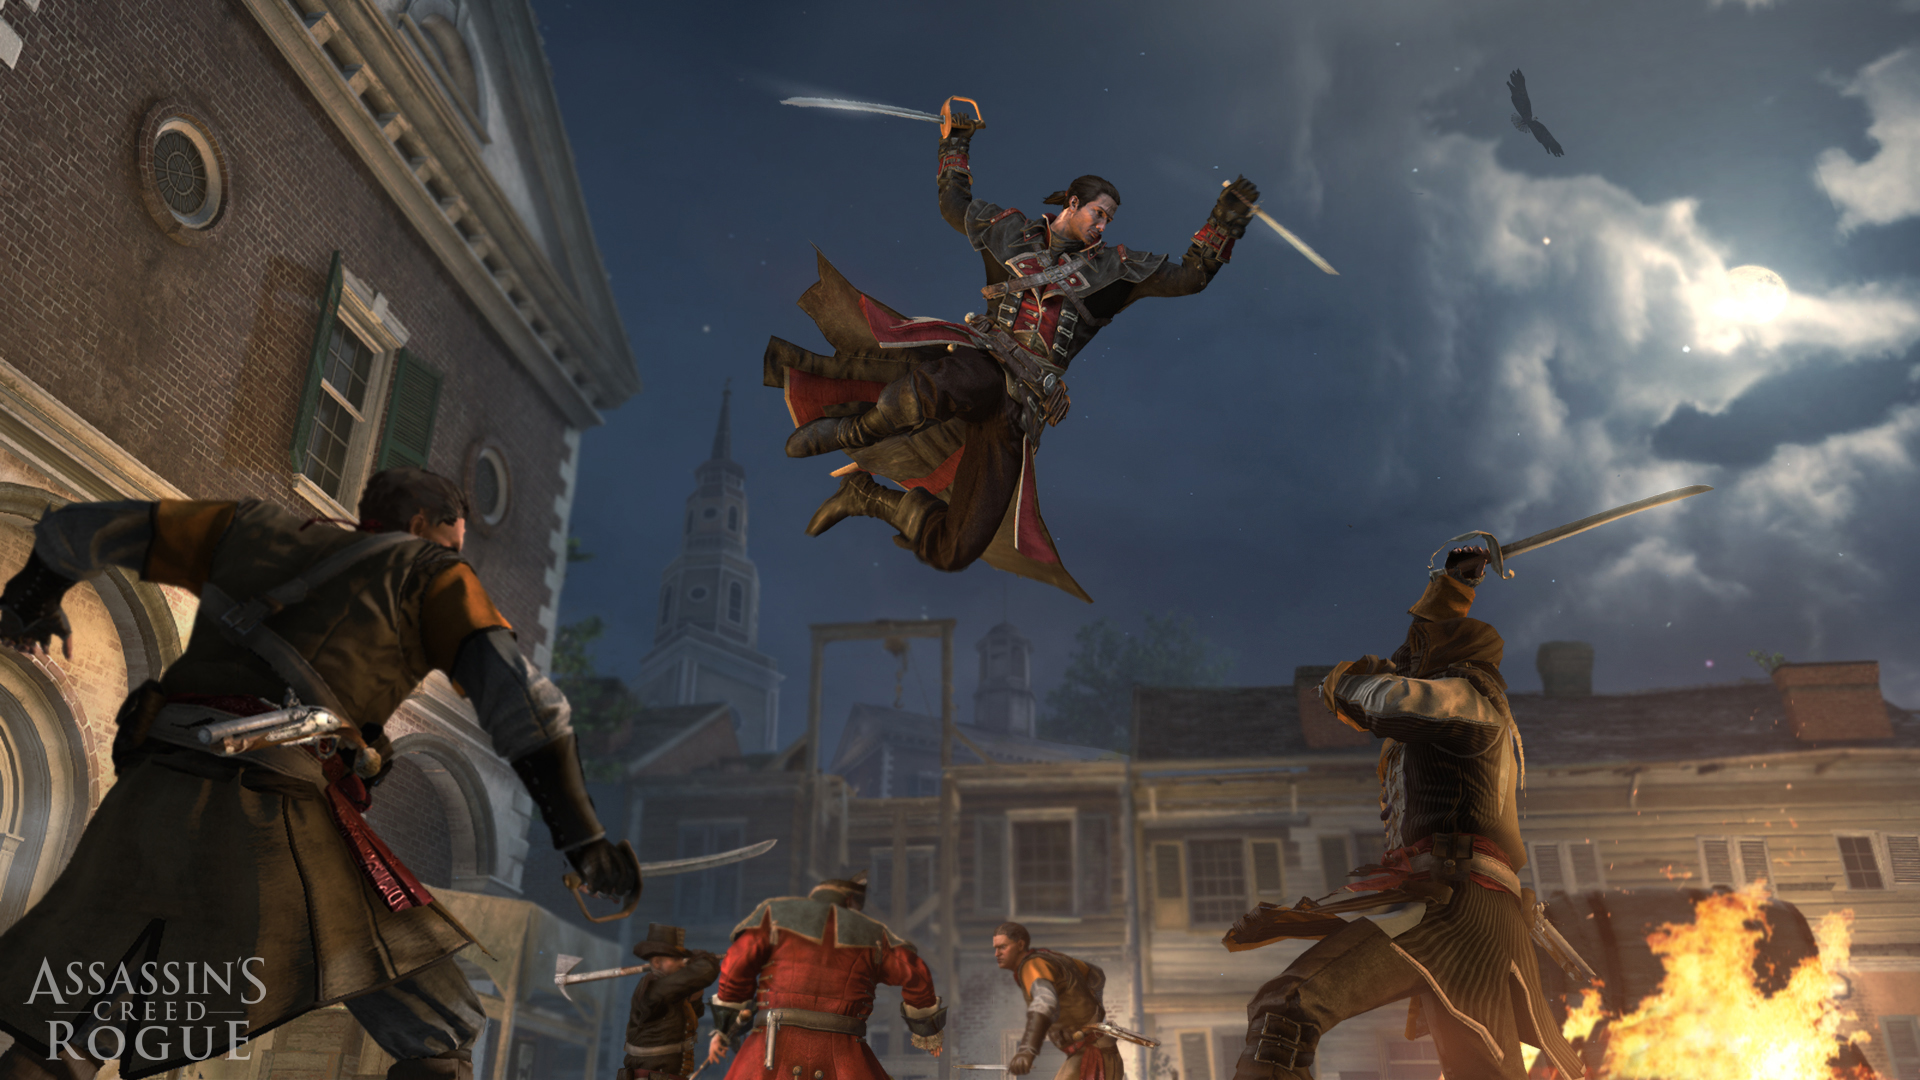 Assassin's Creed: Rogue - Templar vs. Assassin Captain